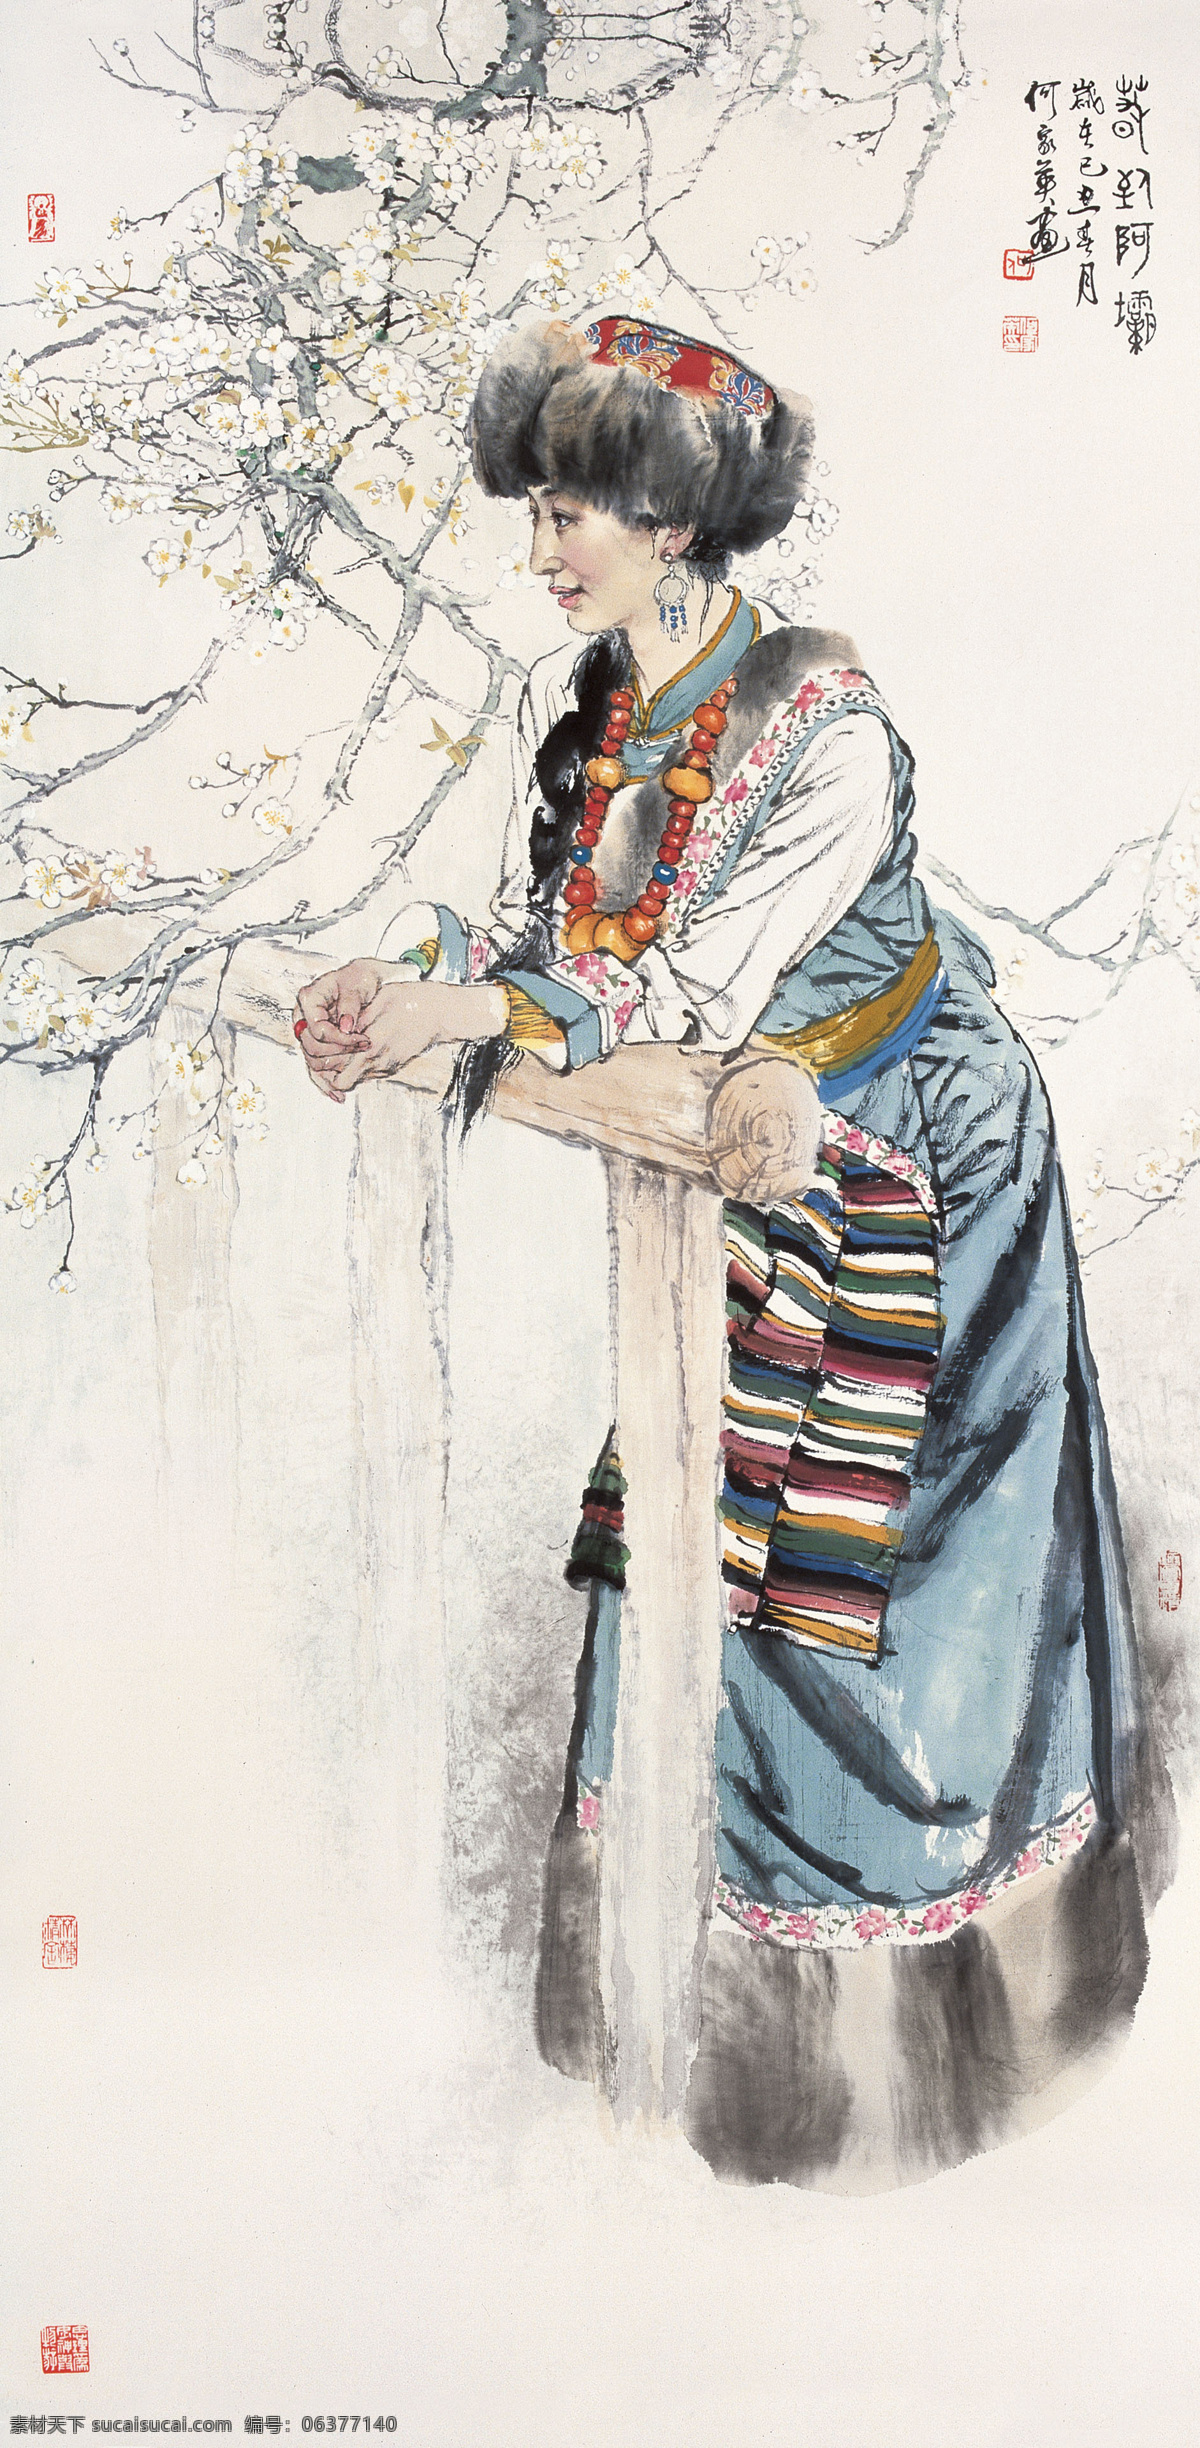 何家英 国画 春到阿坝 镜心 藏族 西藏 梅花 少数 名族 服装 服饰 木头 栅栏 女性 妇女 绘画书法 文化艺术